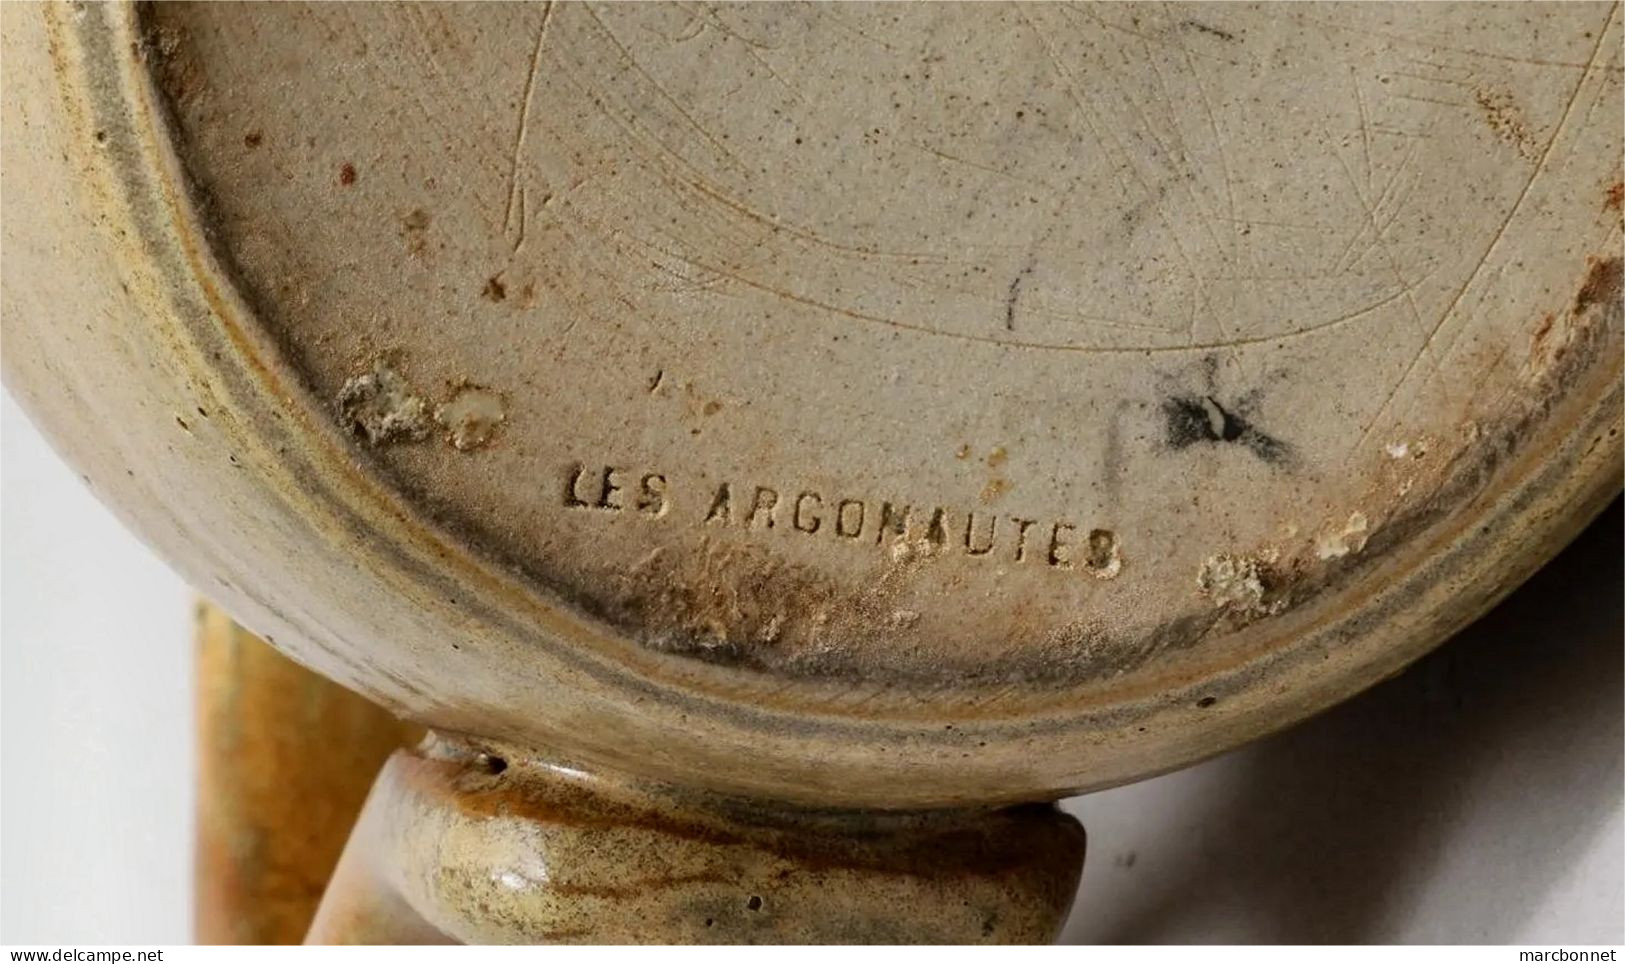 Les Argonautes atelier de céramique à Vallauris Cruche en céramique émaillée